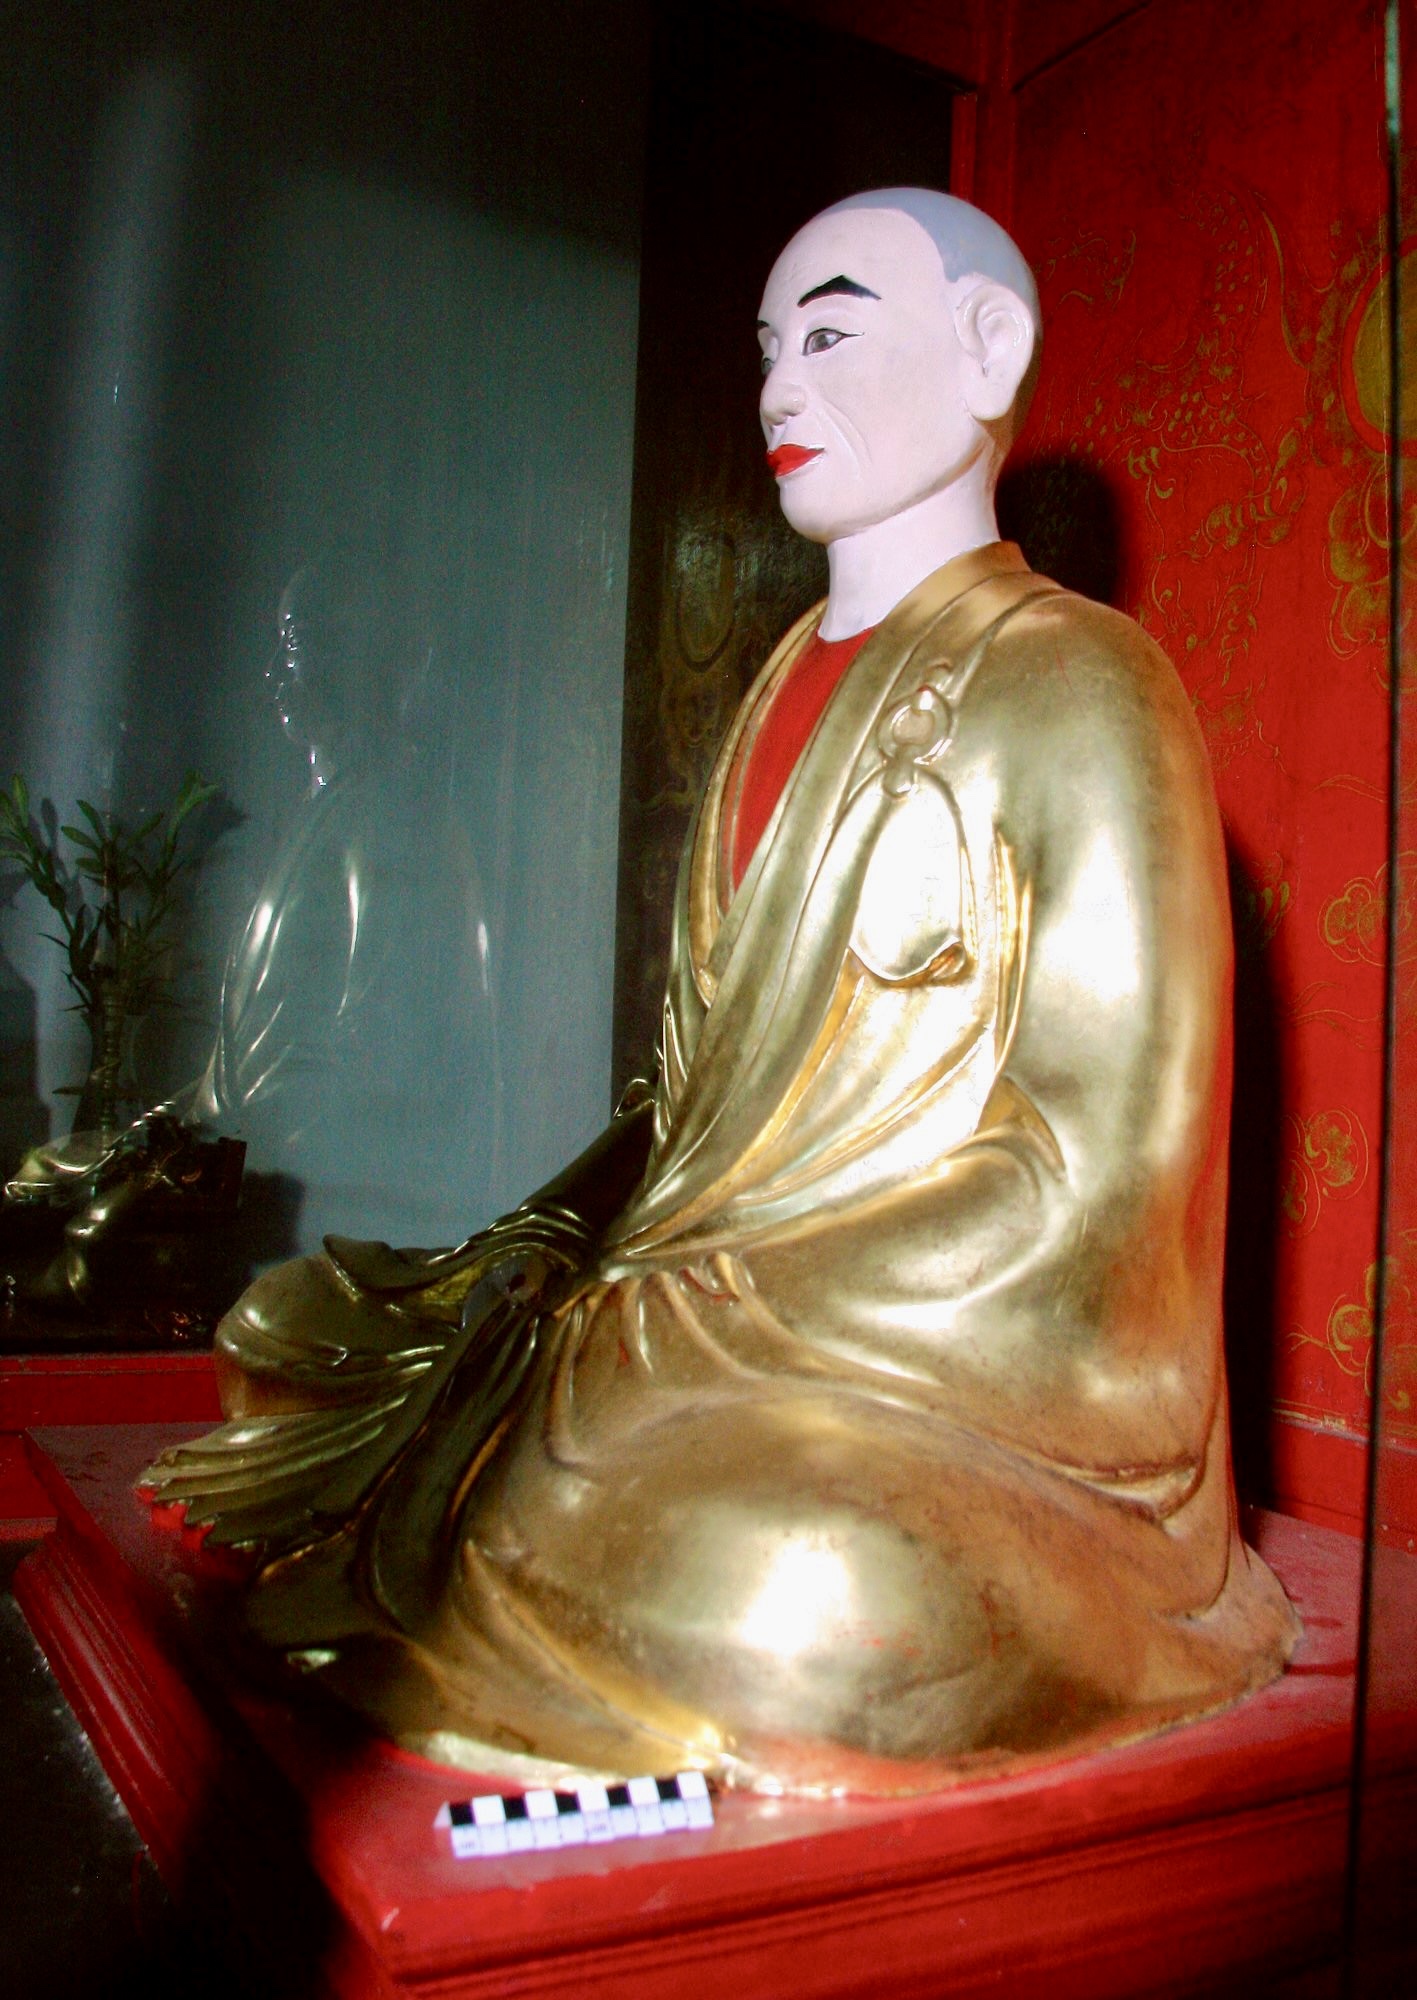 Theo BQL Di tích Lịch sử văn hóa Đền Trần, ngoài giá trị hiện vật gốc độc bản, hình thức độc đáo, bộ tượng Trúc Lâm Tam Tổ còn gắn với lịch sử hình thành, tồn tại của chùa Phổ Minh, công trình kiến trúc nổi tiếng thời Trần.